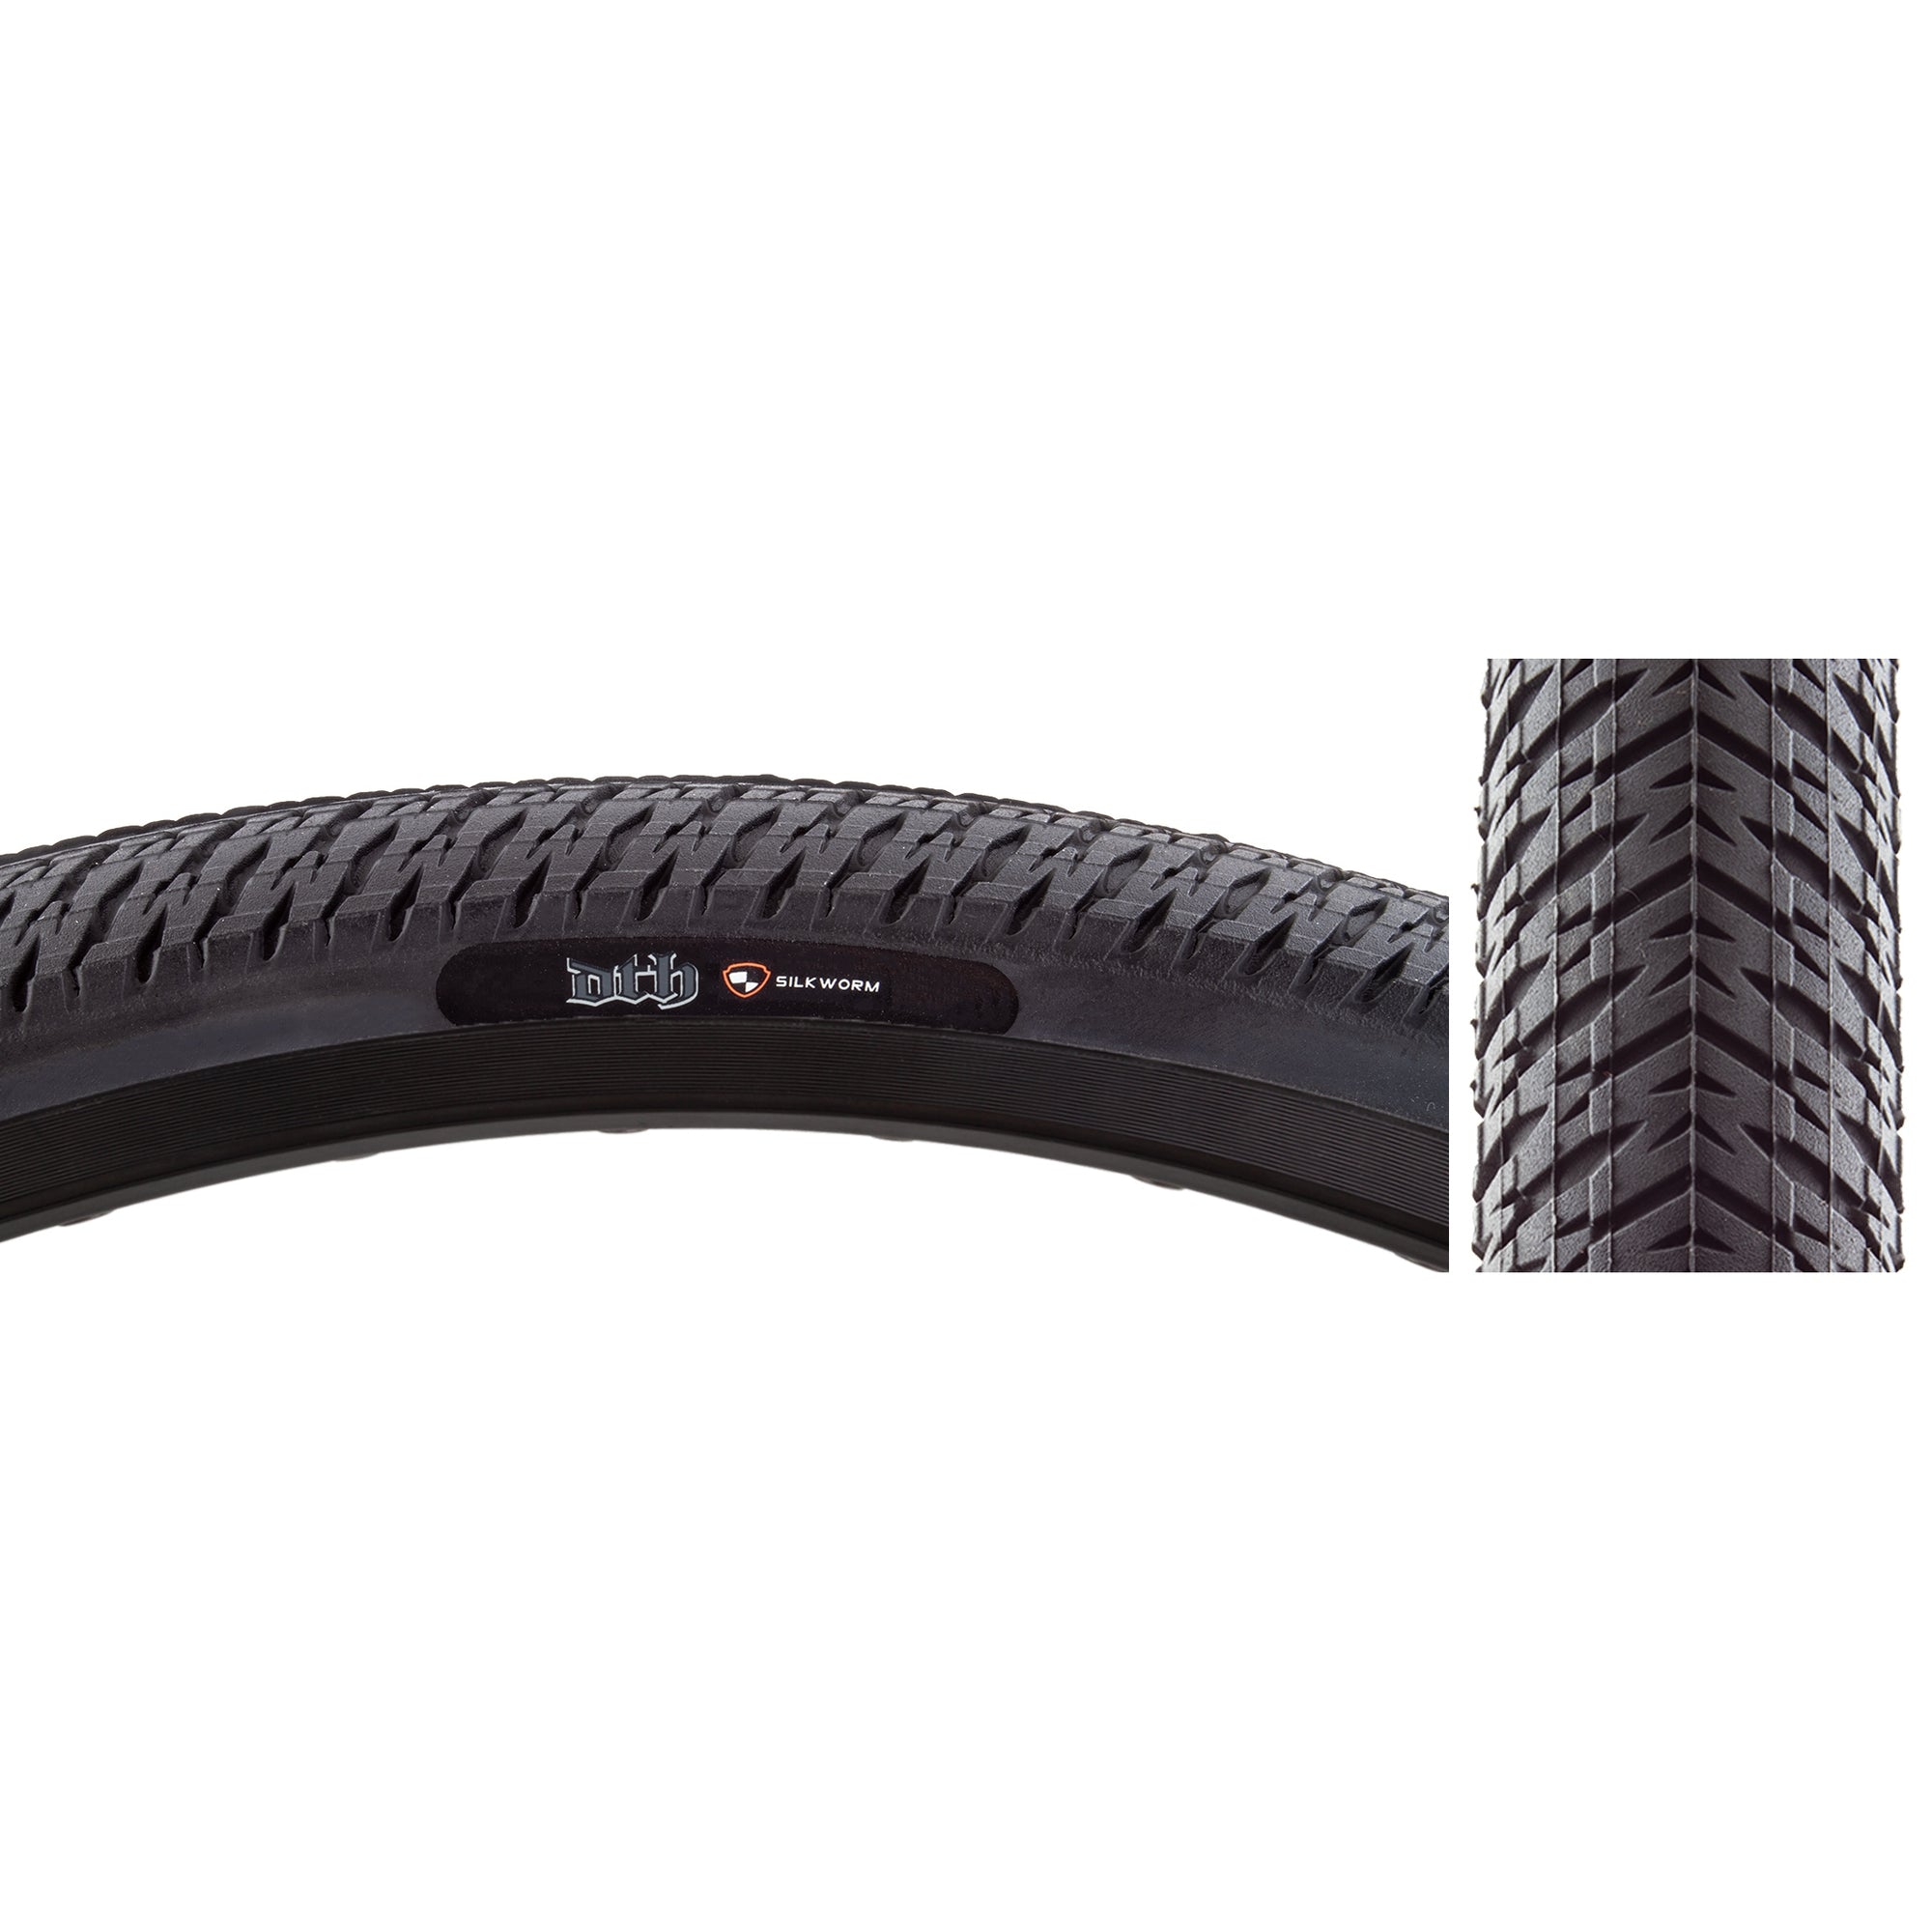 24x1.75 Maxxis DTH BMX tire - Black